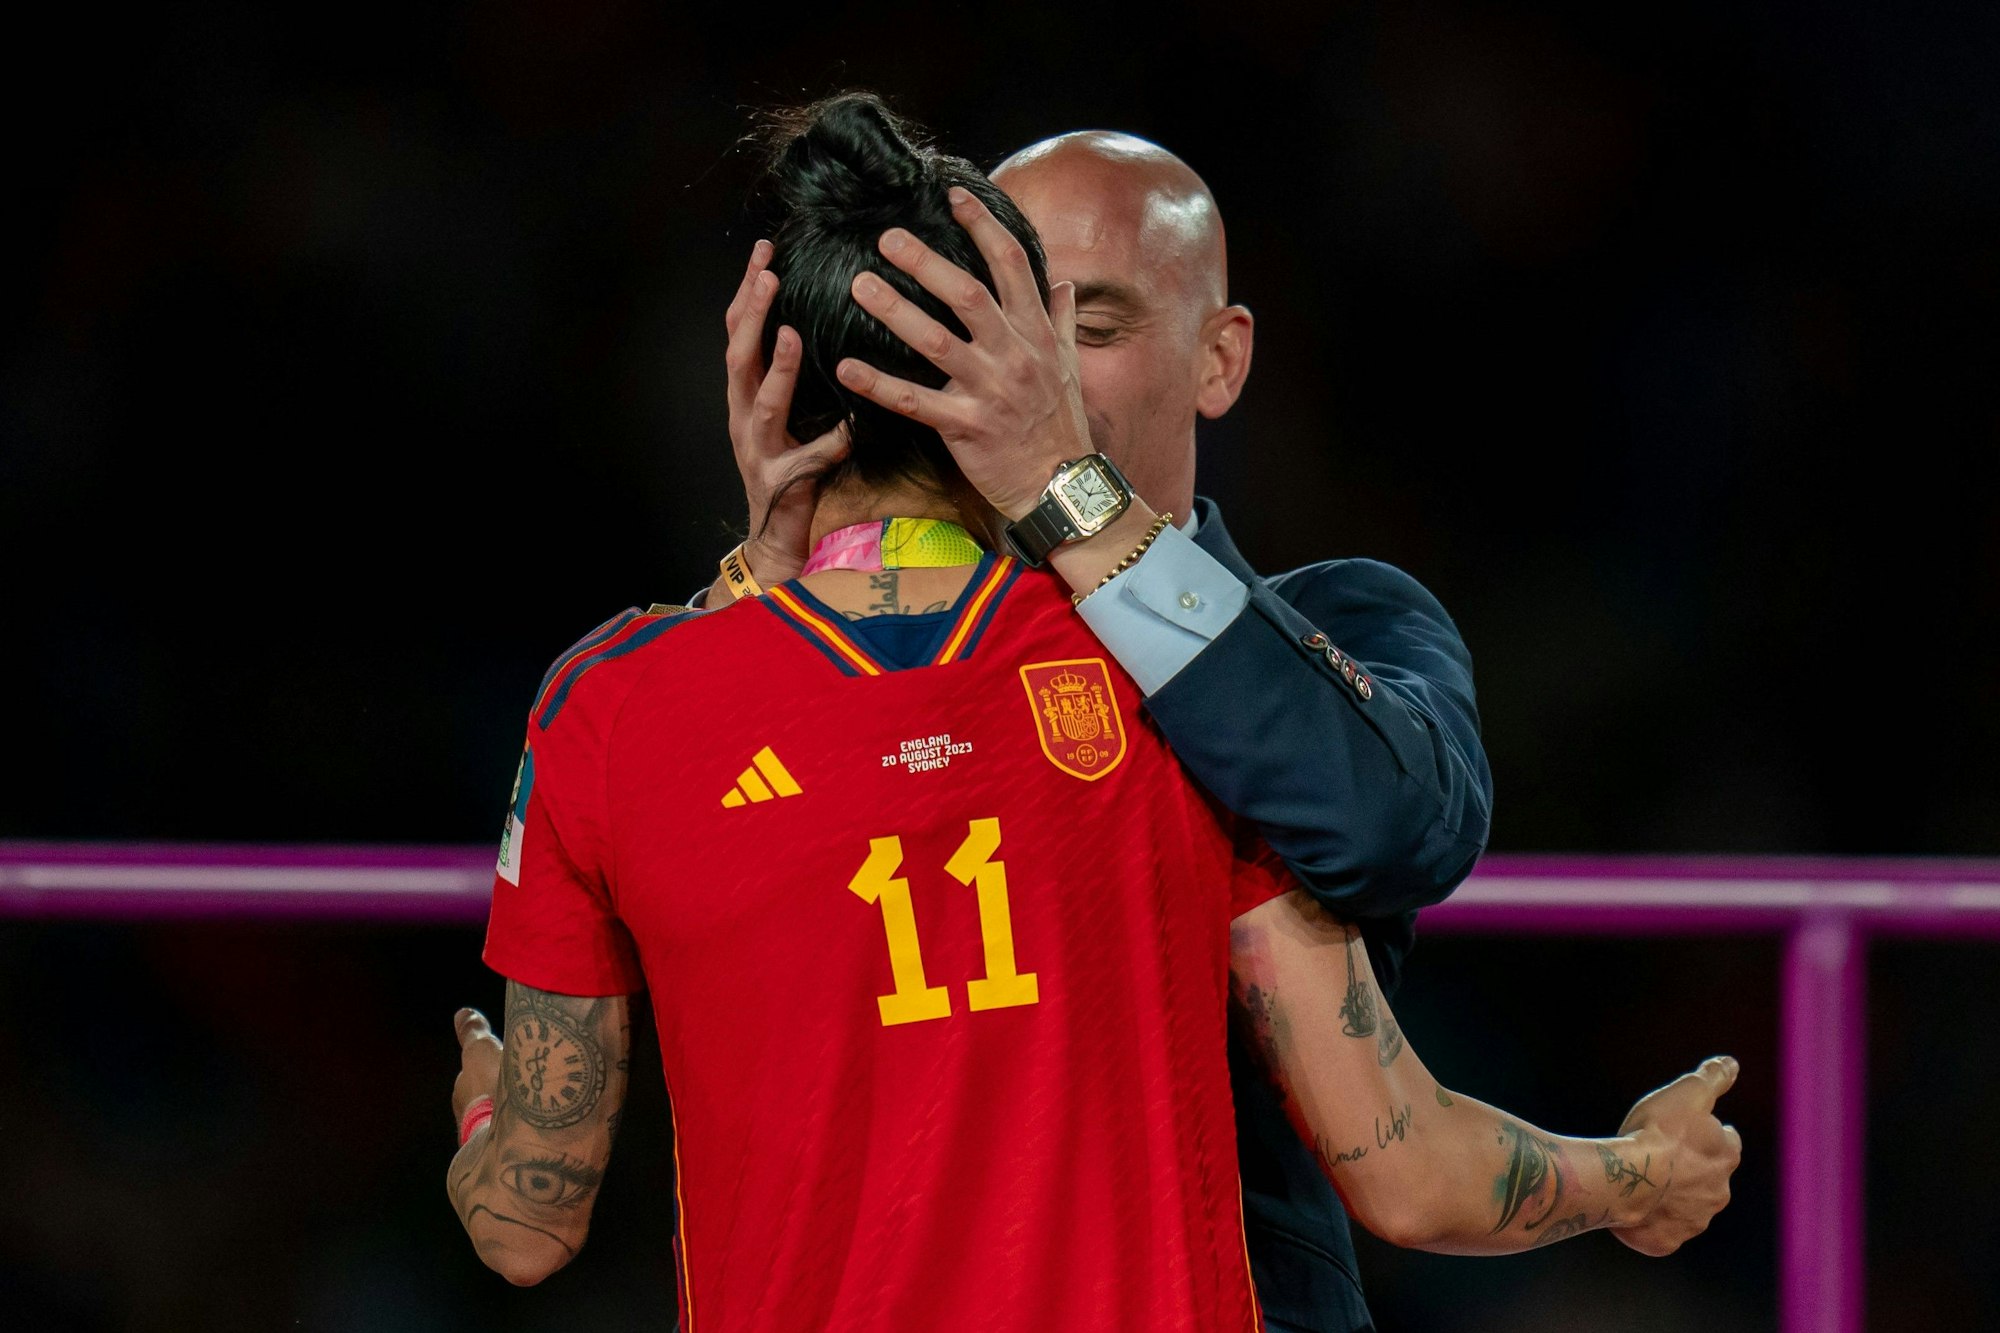 Die spanische Fußballerin Jennifer Hermoso wird von RFEF-Präsident Luis Rubiales während der Siegerehrung bei der Frauen-Fußballweltmeisterschaft geküsst.